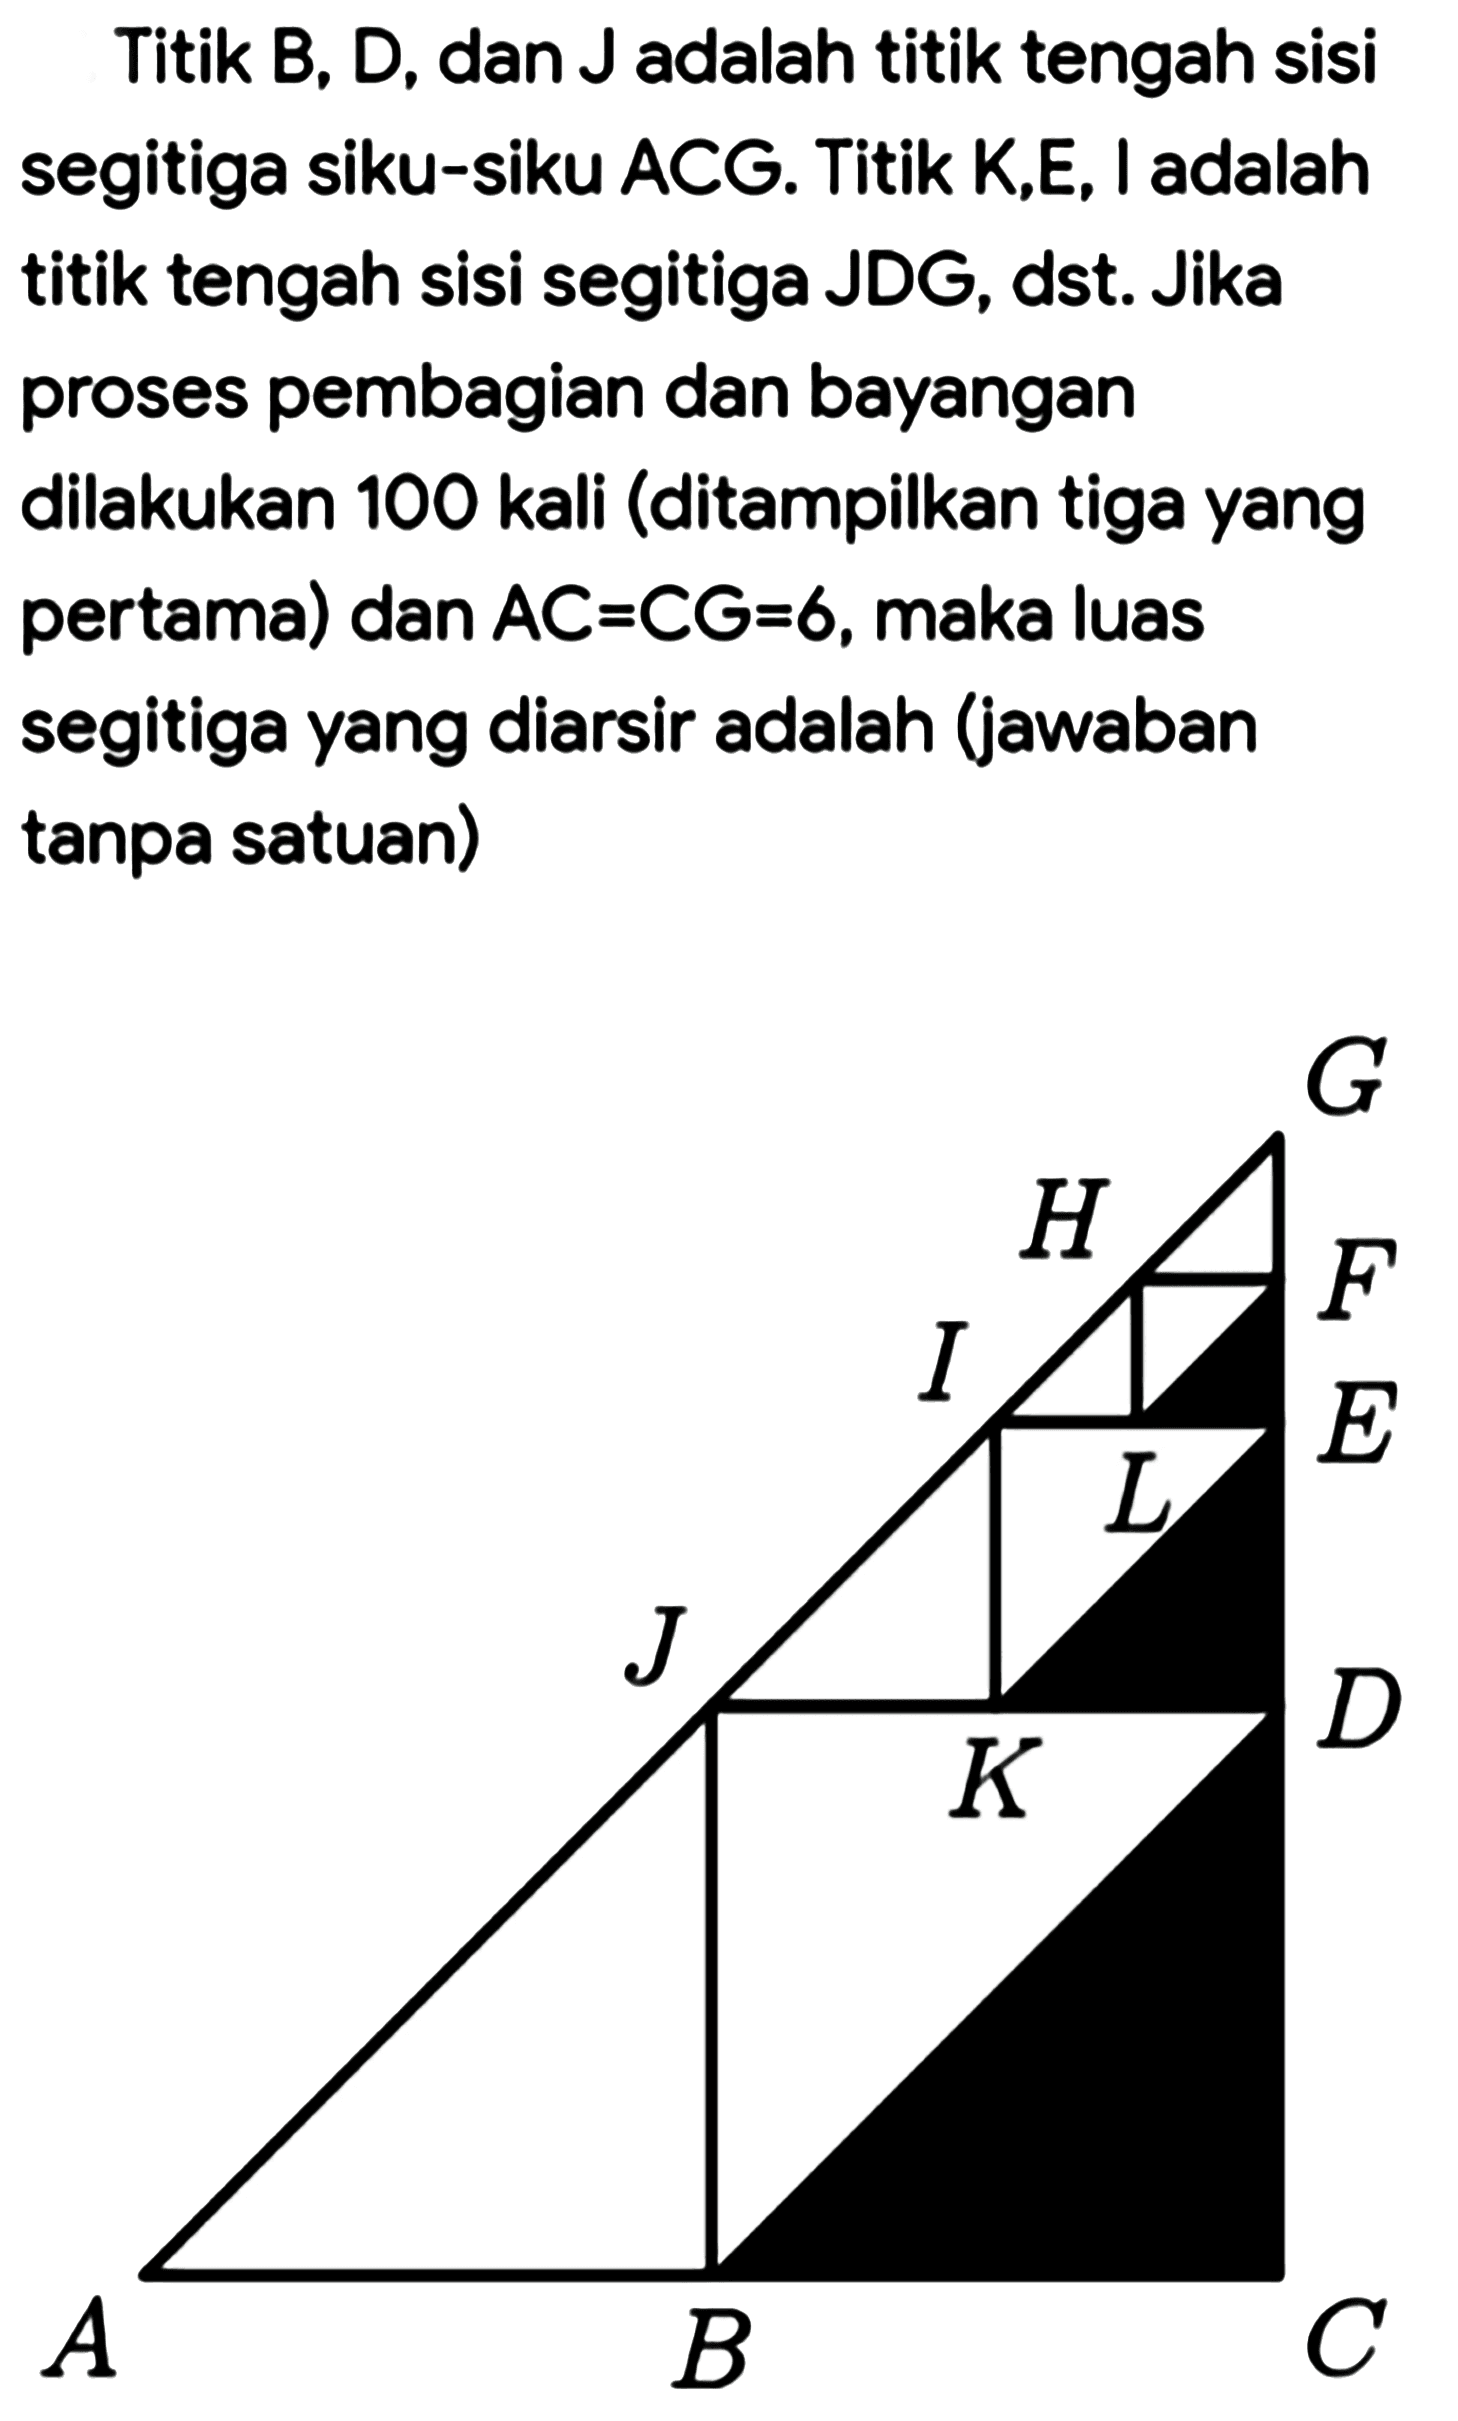 Titik B, D, dan J adalah titik tengah sisi segitiga siku-siku ACG. Titik K,E, I adalah titik tengah sisi segitiga JDG, dst. Jika proses pembagian dan bayangan dilakukan 100 kali (ditampilkan tiga yang pertama) dan AC=CG=6, maka luas segitiga yang diarsir adalah (jawaban tanpa satuan) A B C D E F G H I J K L